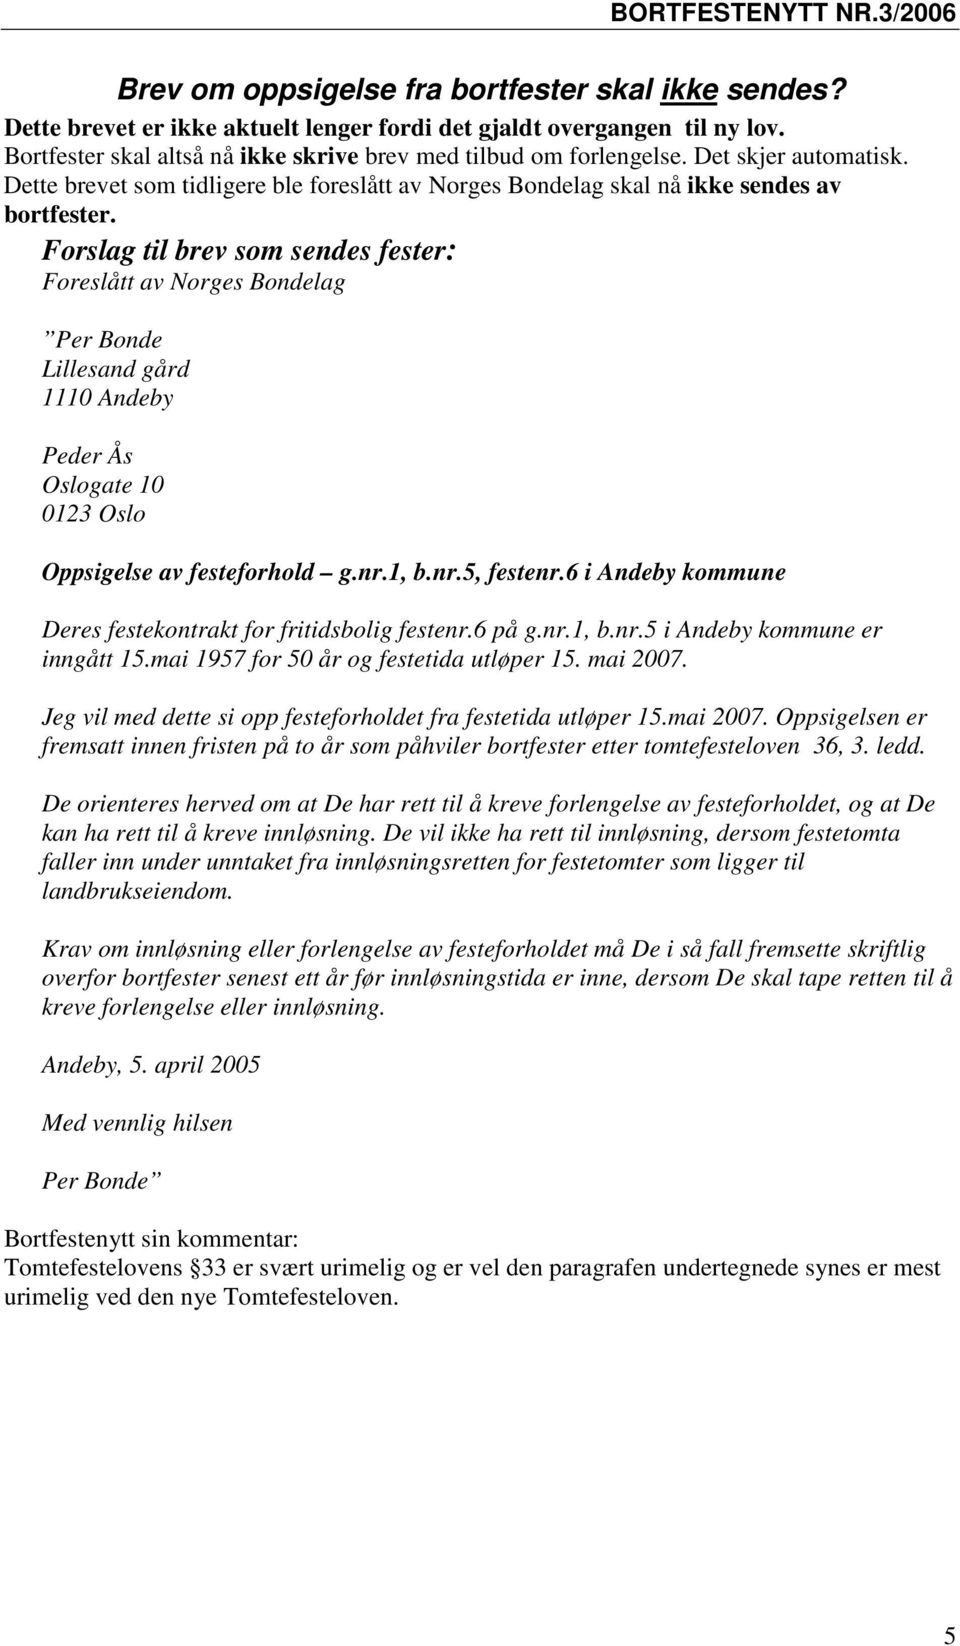 Forslag til brev som sendes fester: Foreslått av Norges Bondelag Per Bonde Lillesand gård 1110 Andeby Peder Ås Oslogate 10 0123 Oslo Oppsigelse av festeforhold g.nr.1, b.nr.5, festenr.